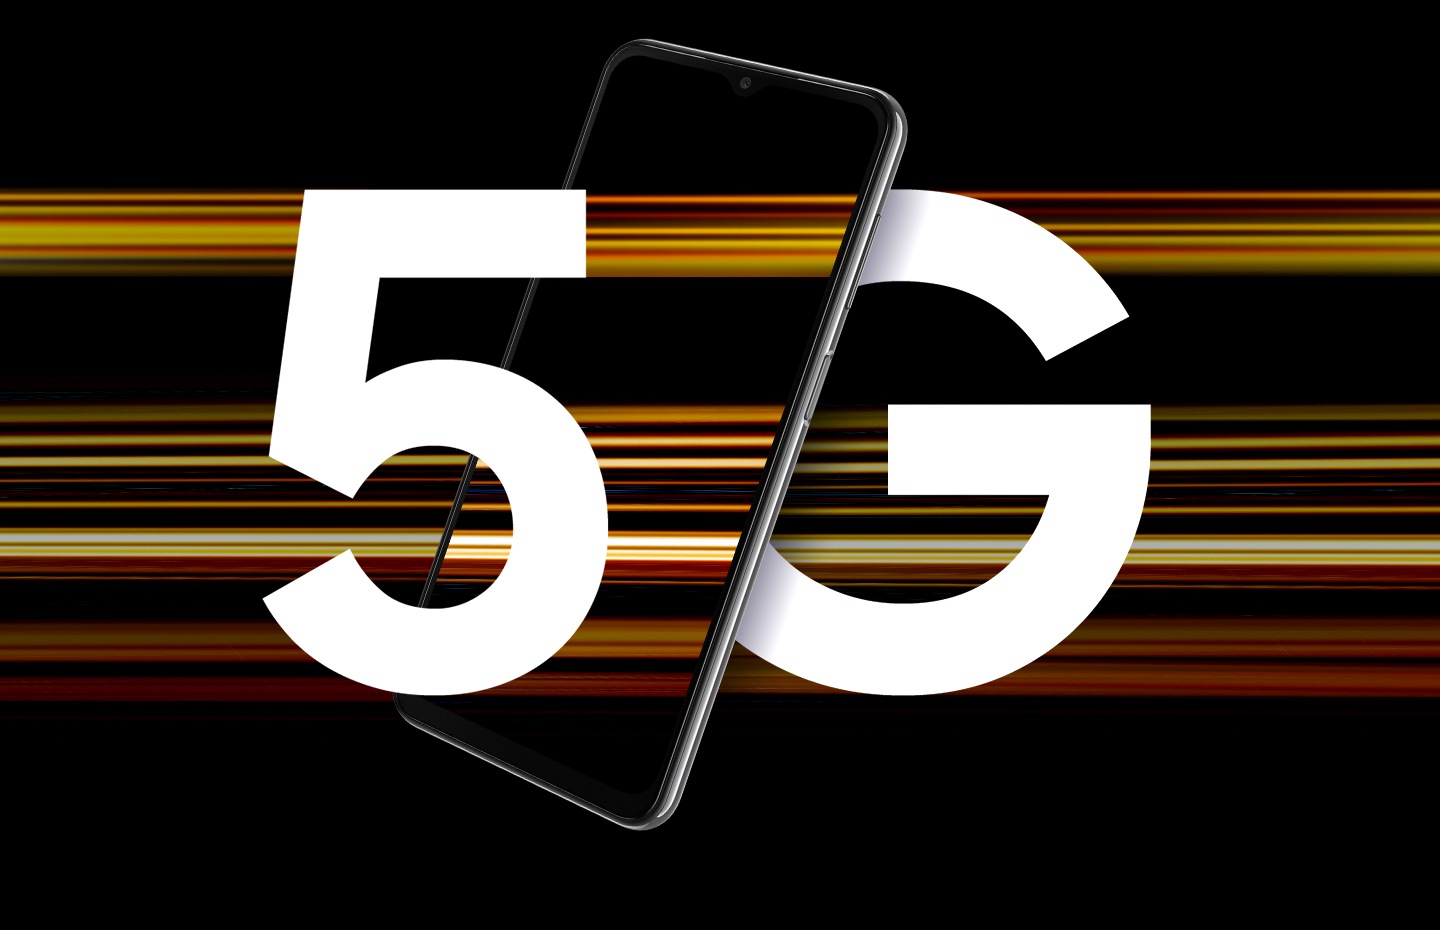 L’immagine mostra un Galaxy A23 5G con il testo 5G, le cui lettere sono divise dal dispositivo e circondato da fasci di luce colorata che rappresentano la velocità del 5G.